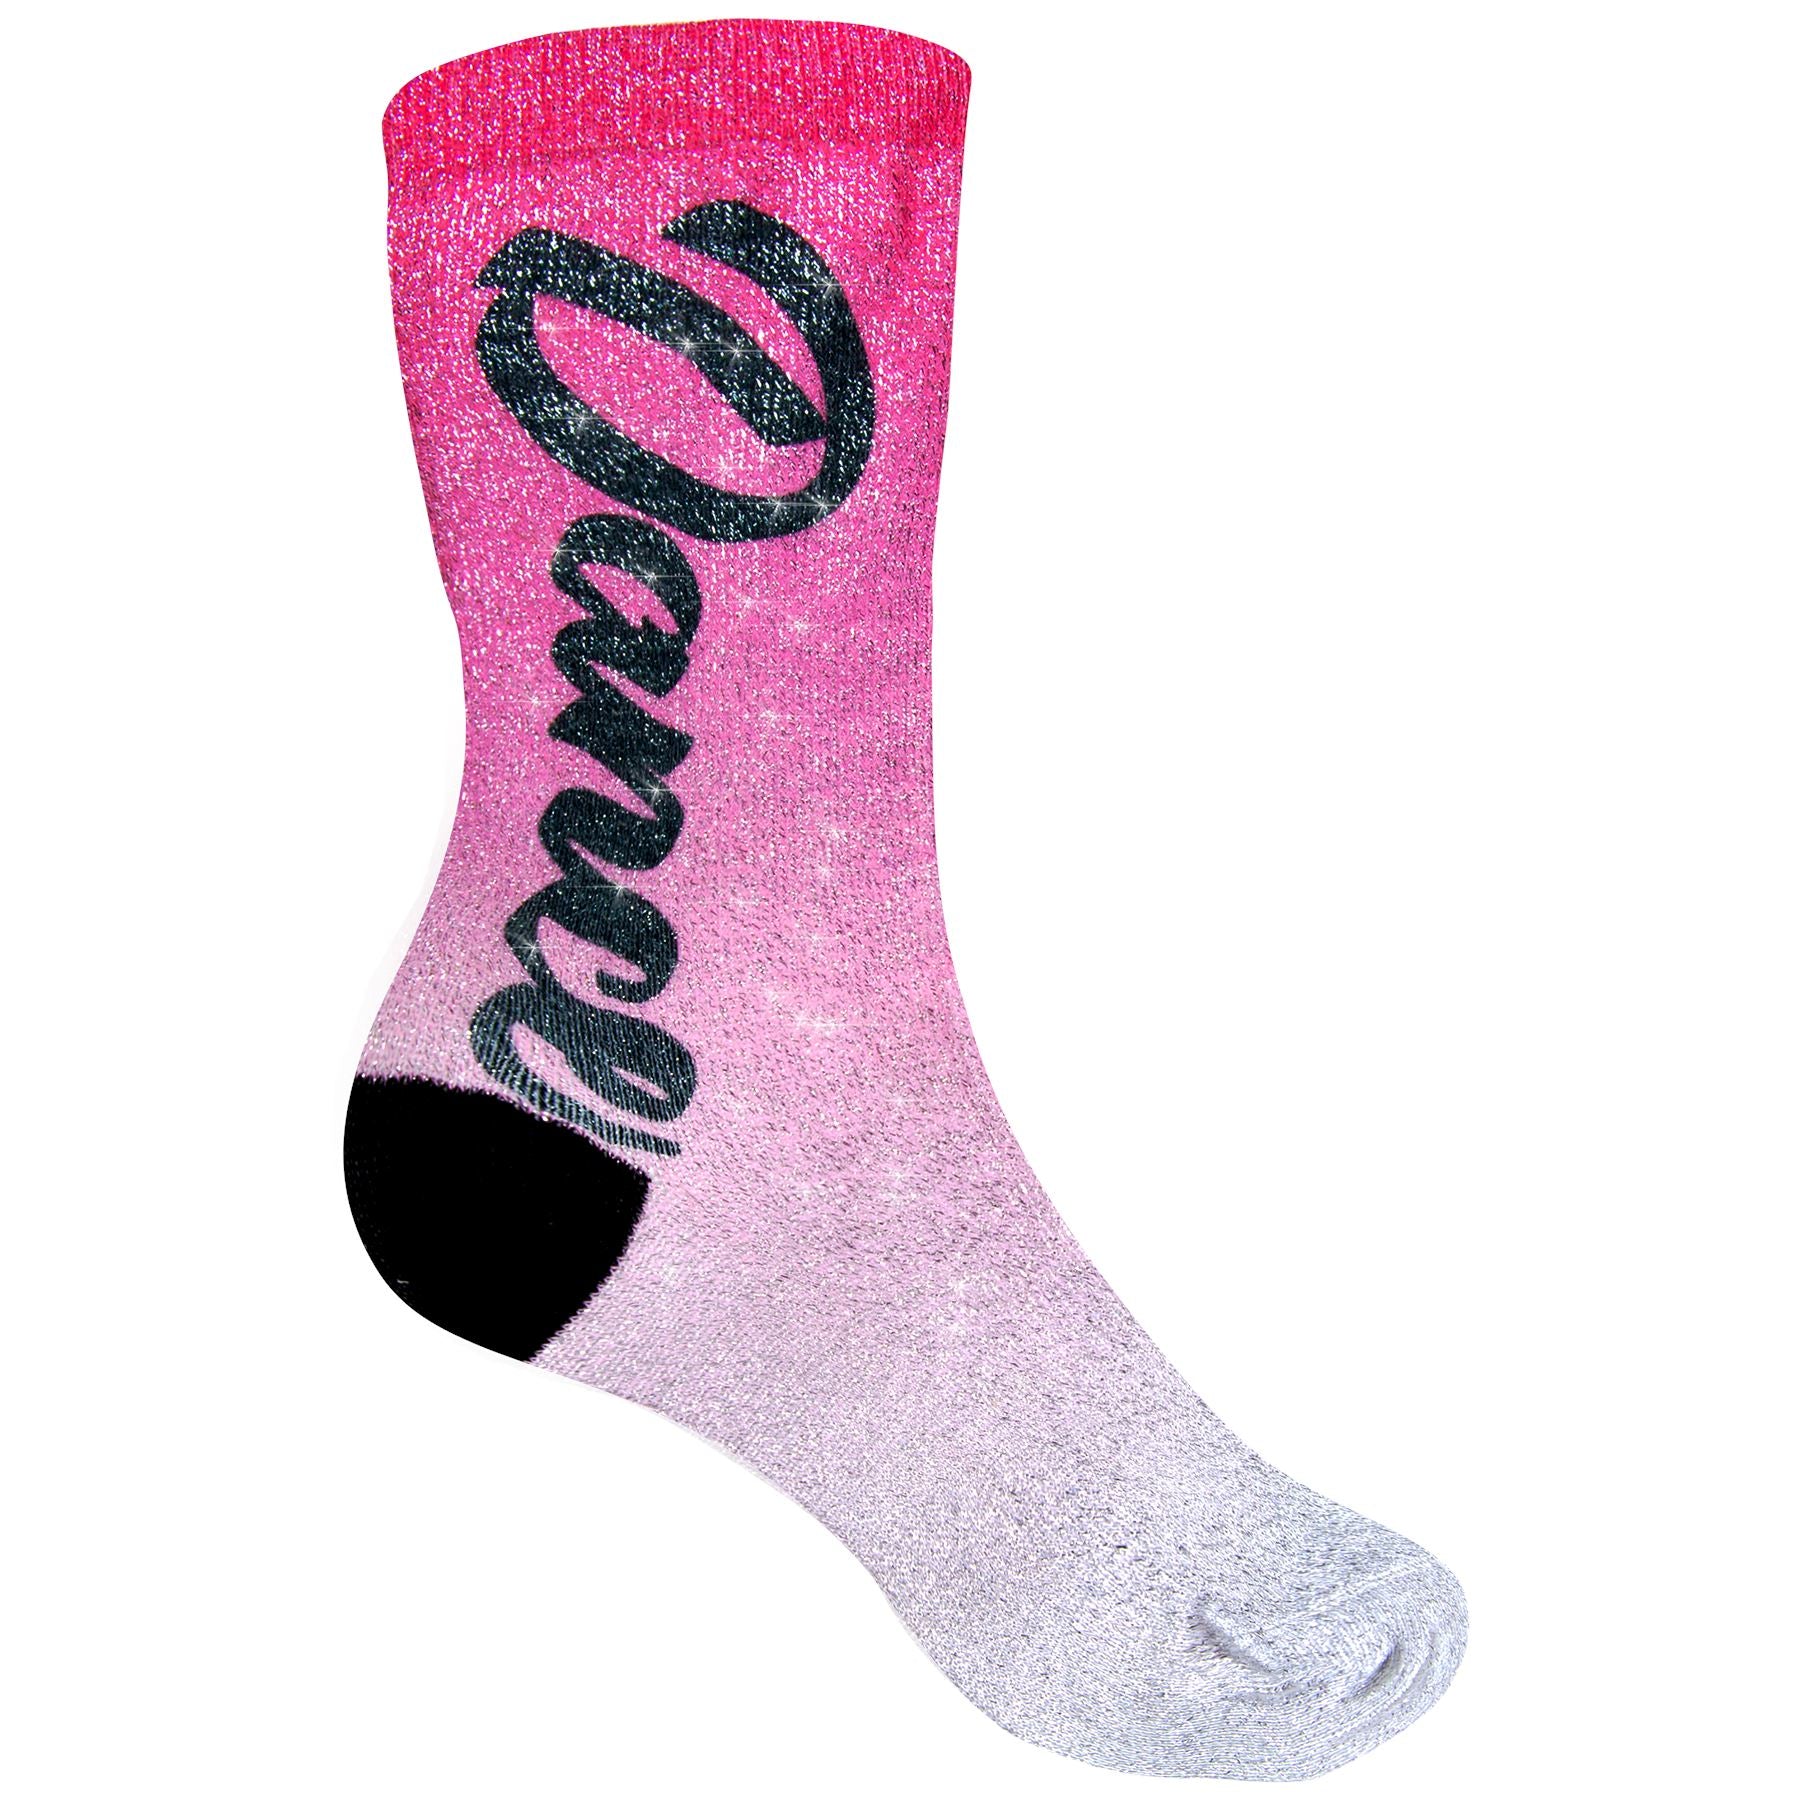 Shimmer Kids Crew Socks (1 Pair), Full Color Dye Sub Socks Craftworks NW 